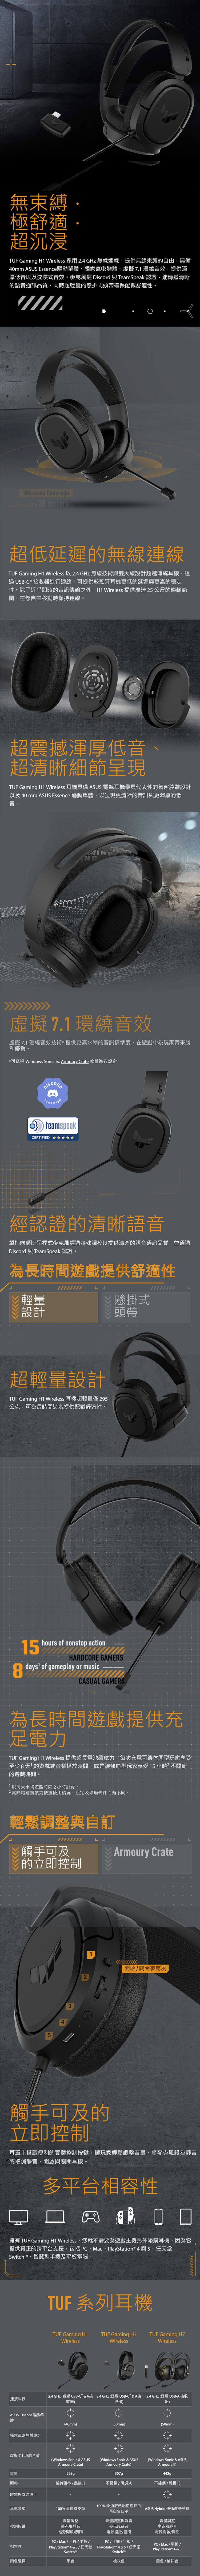 華碩-TUF-GAMING-H1--無線耳罩式耳麥-內.jpg